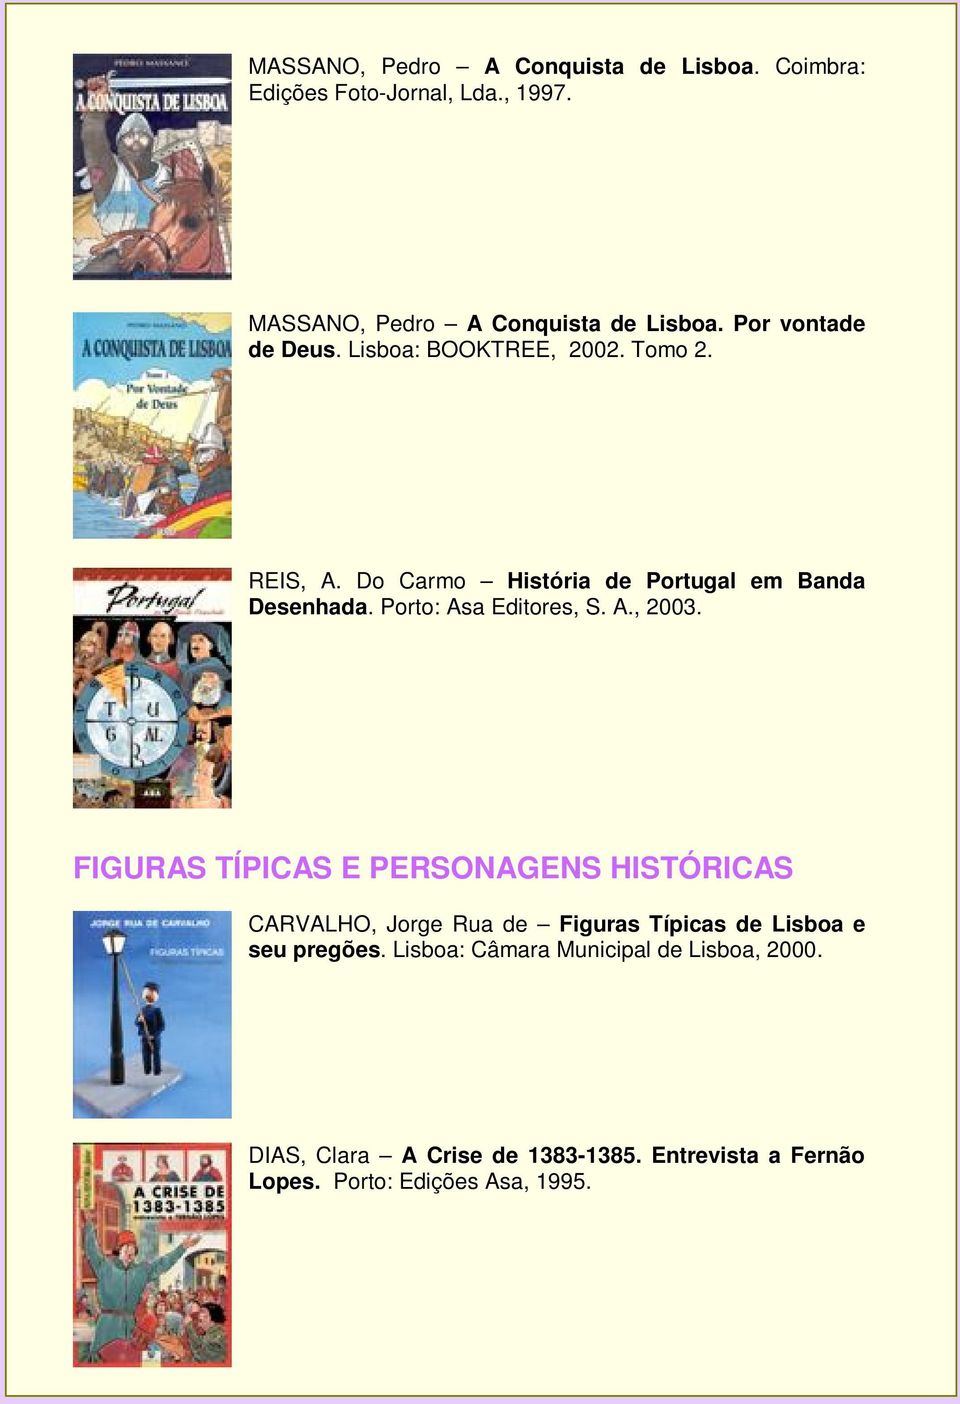 Porto: Asa Editores, S. A., 2003.